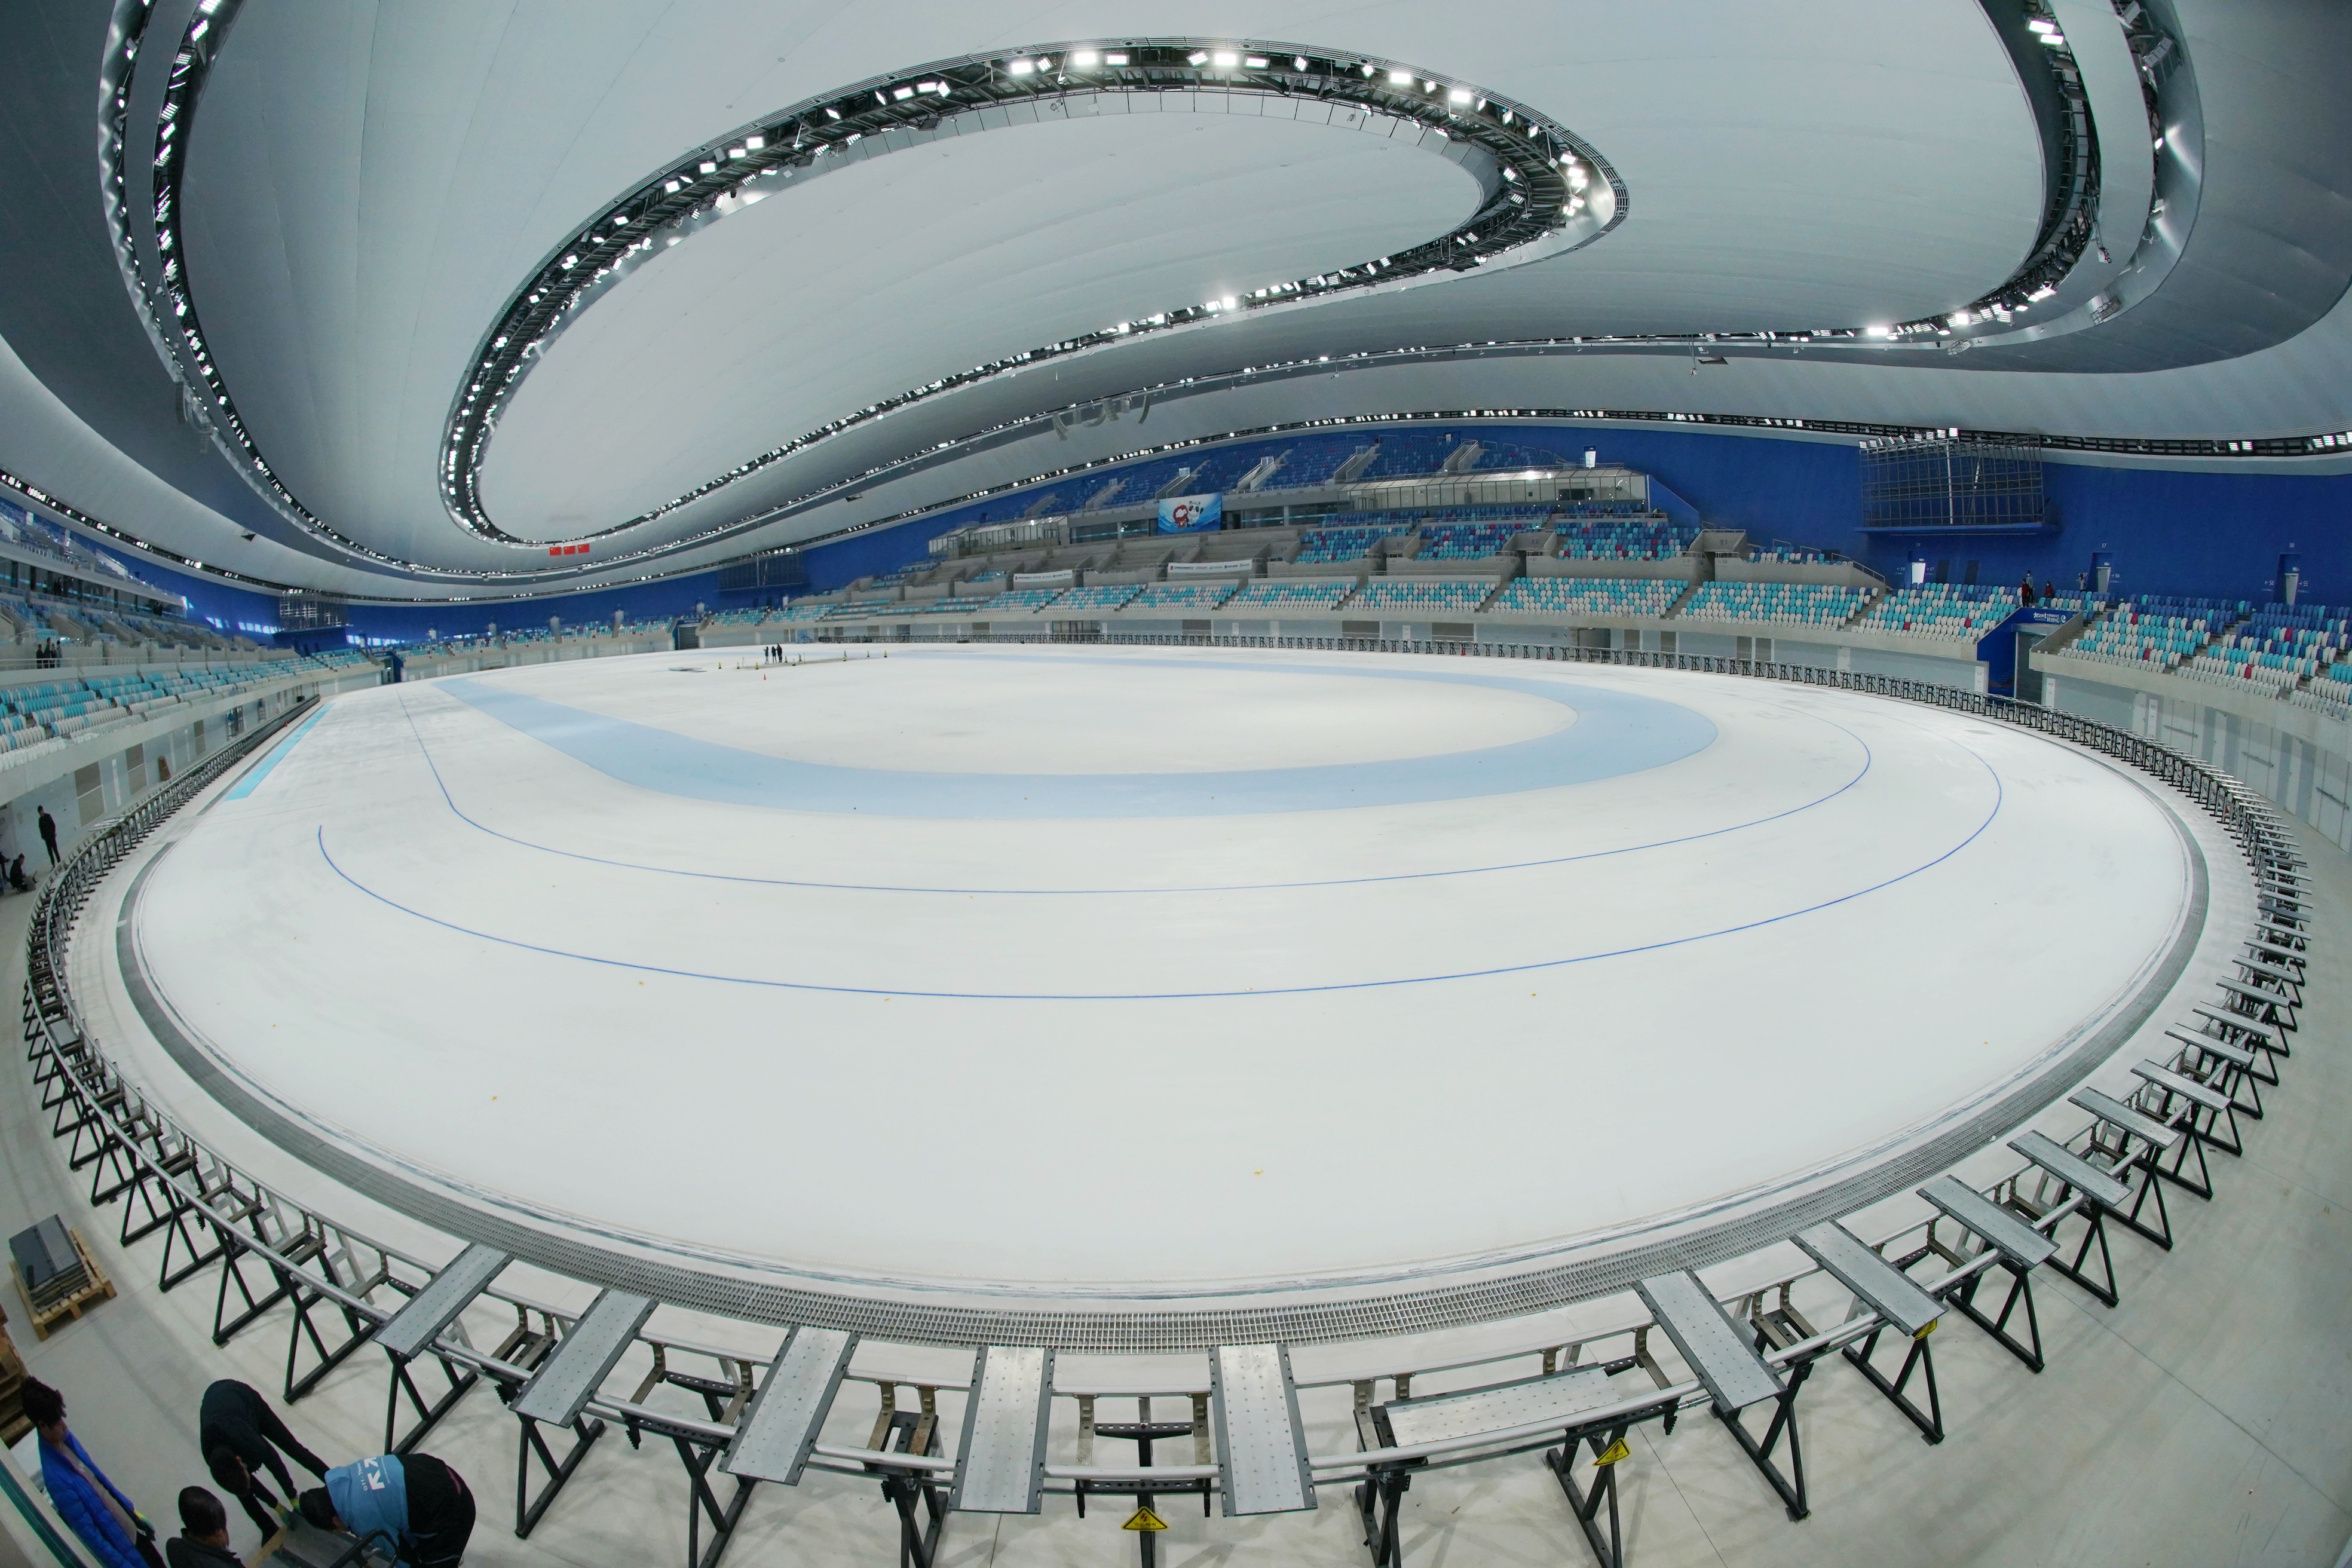 北京冬季五輪 スケートメイン会場の製氷作業おおむね完了 写真6枚 国際ニュース Afpbb News